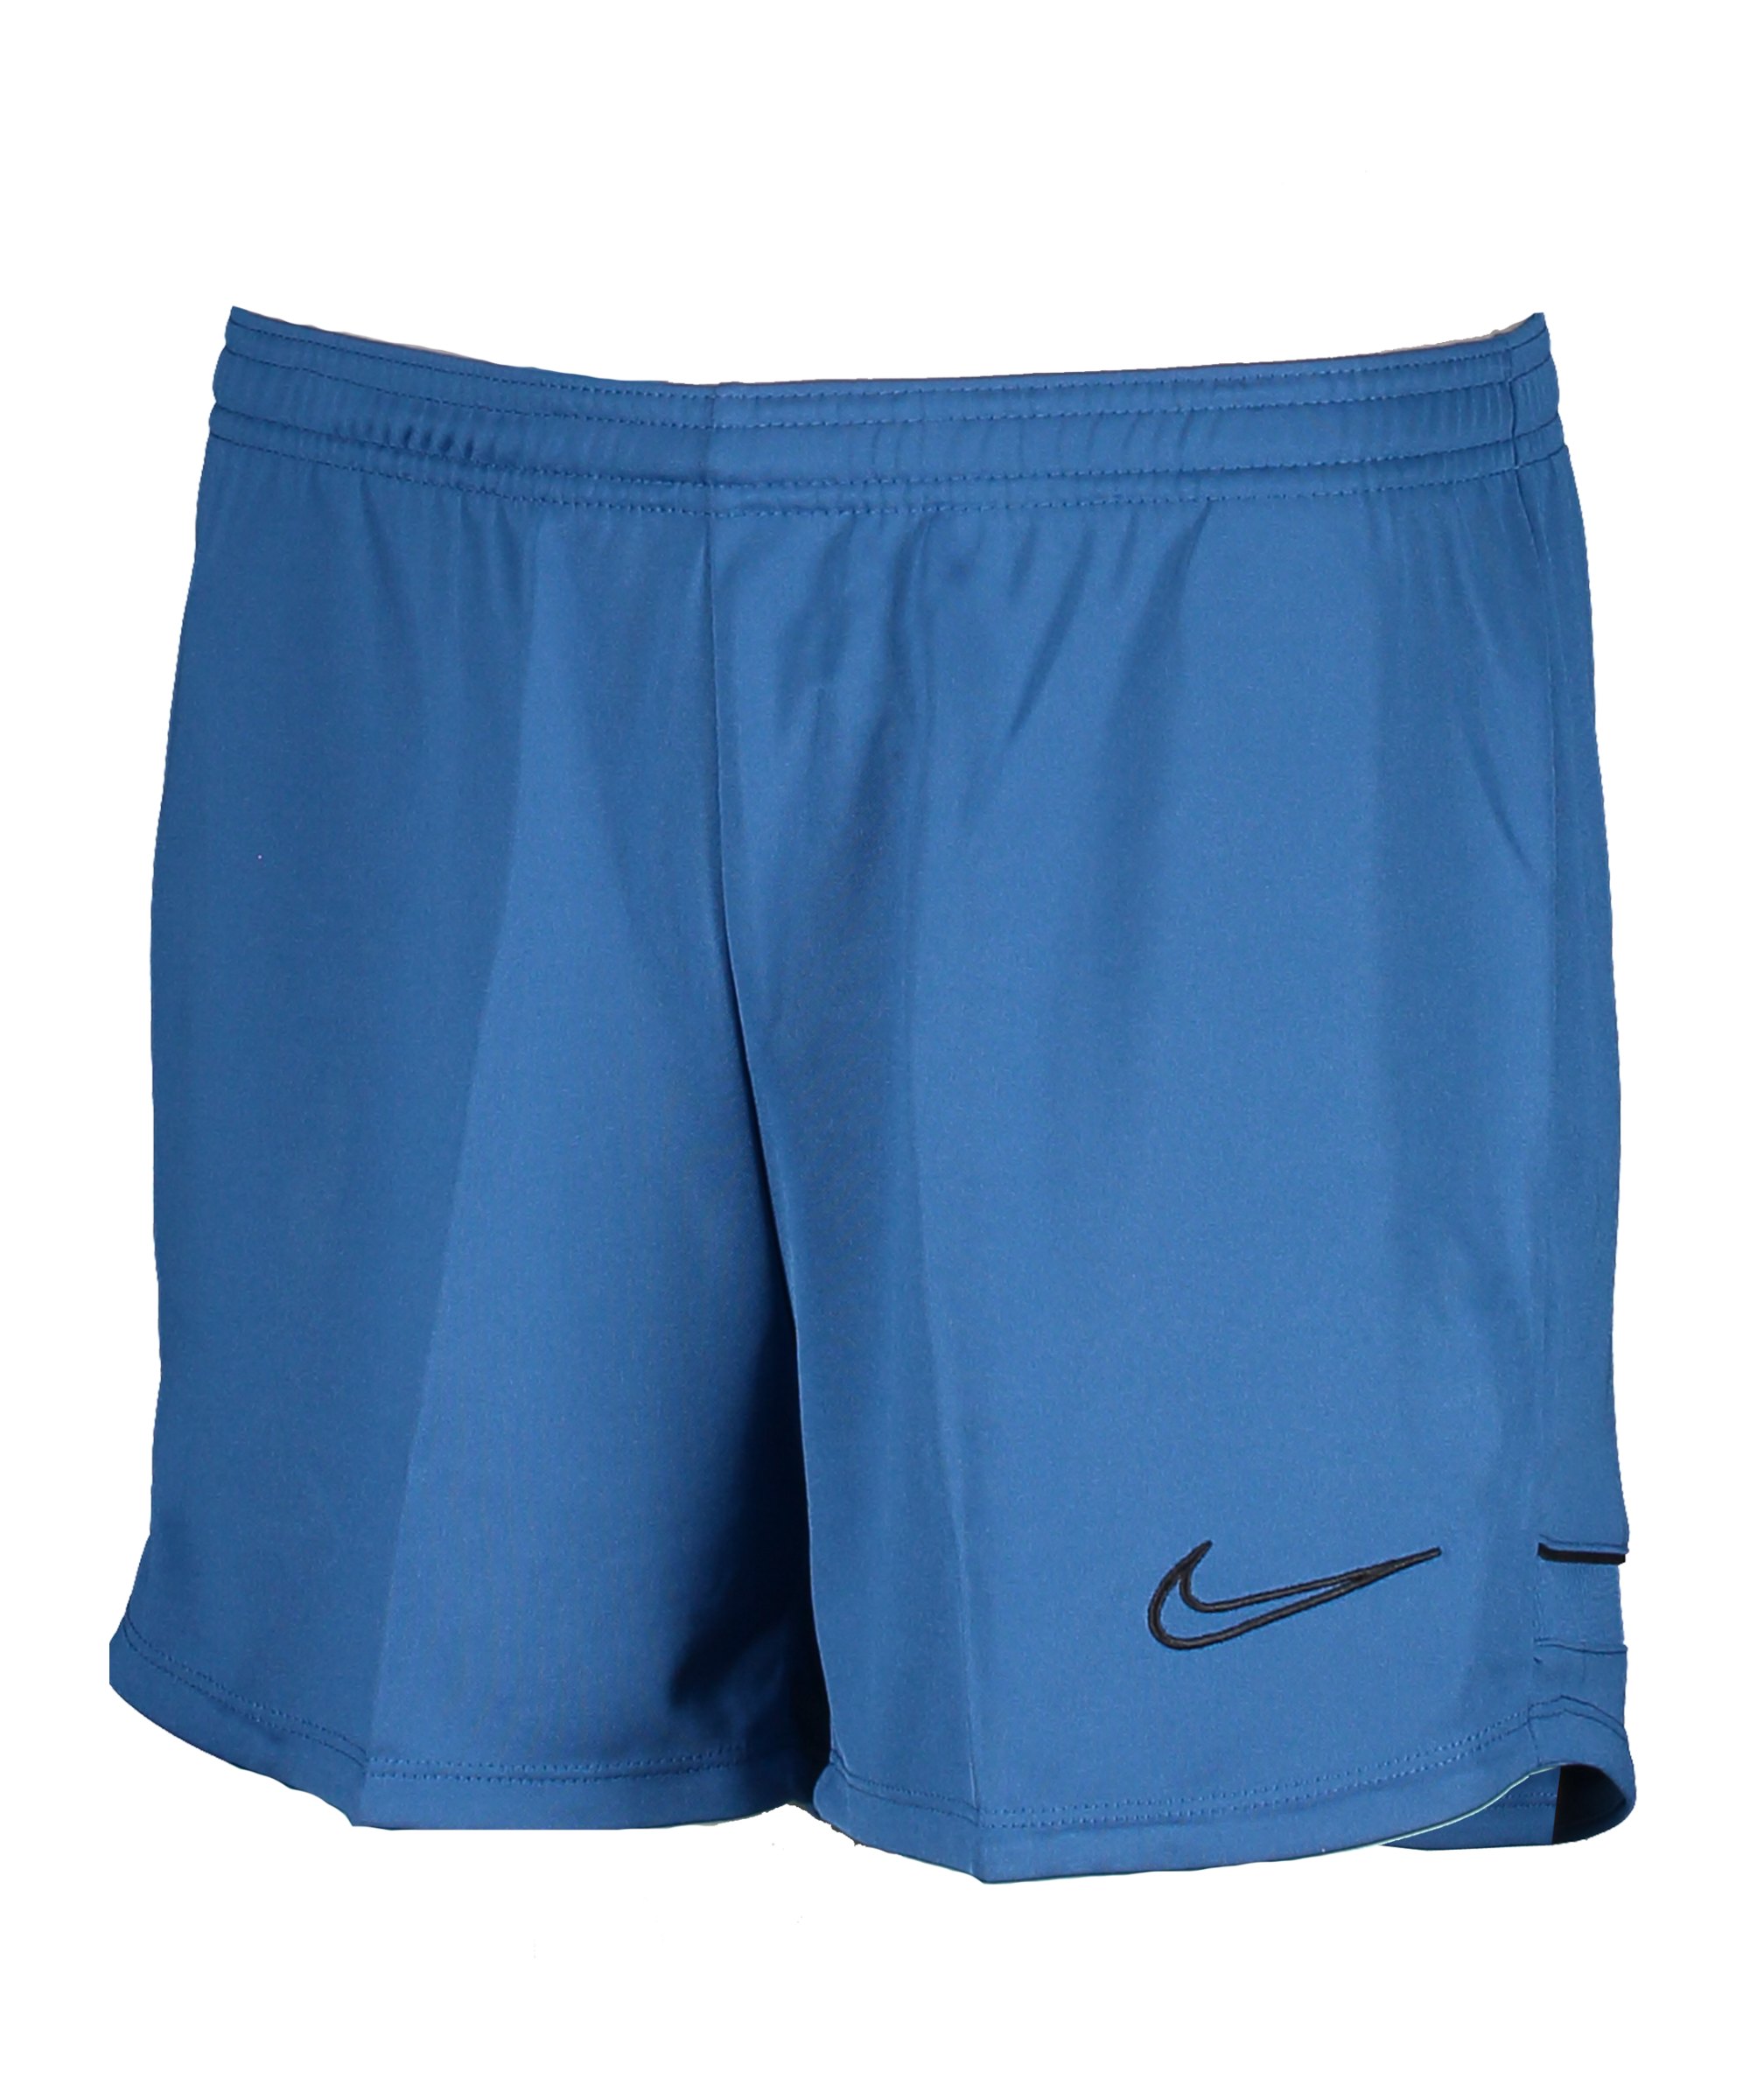 Nike Academy 21 Short Damen Blau Orange F407 - blau